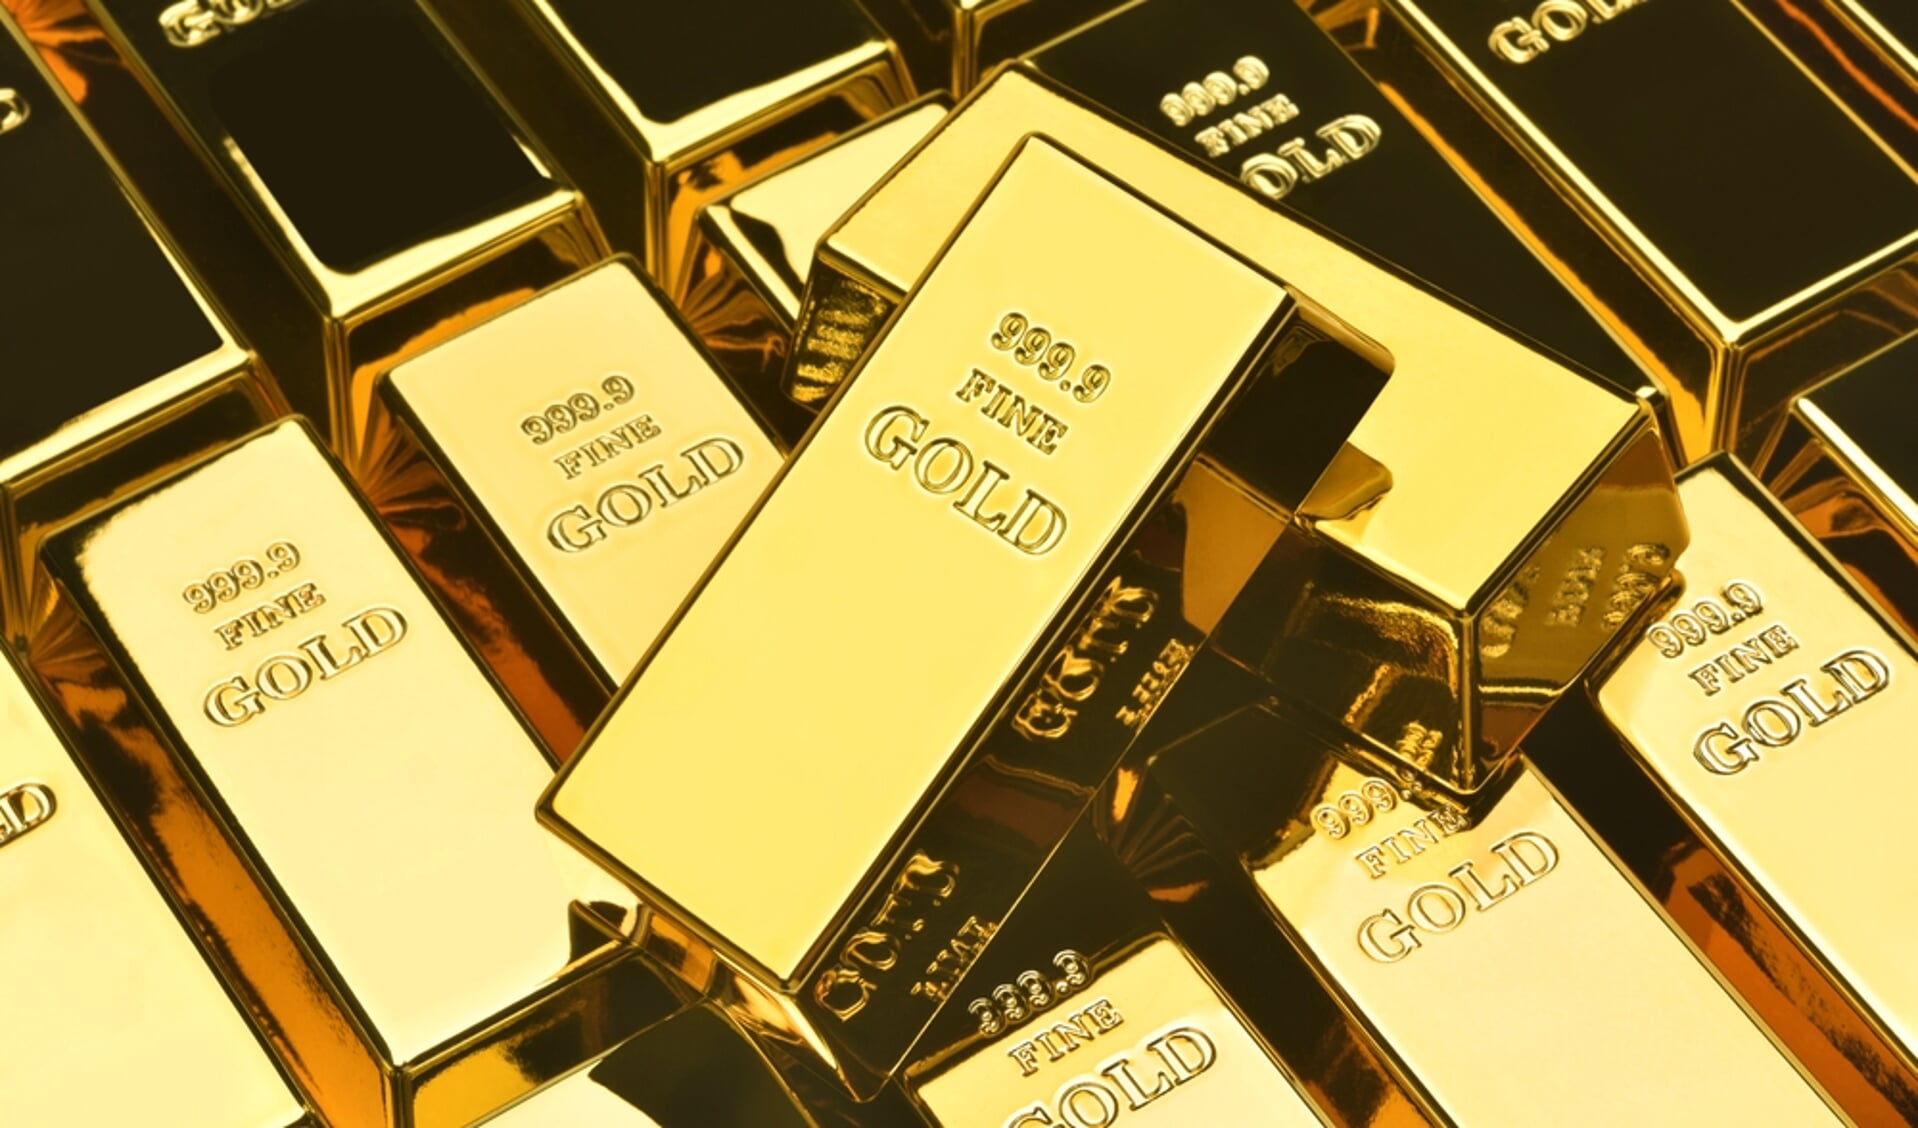 scheidsrechter Duplicatie BES Goud kopen: een goede investering in onzekere tijden | Nieuws uit de regio  Leusden